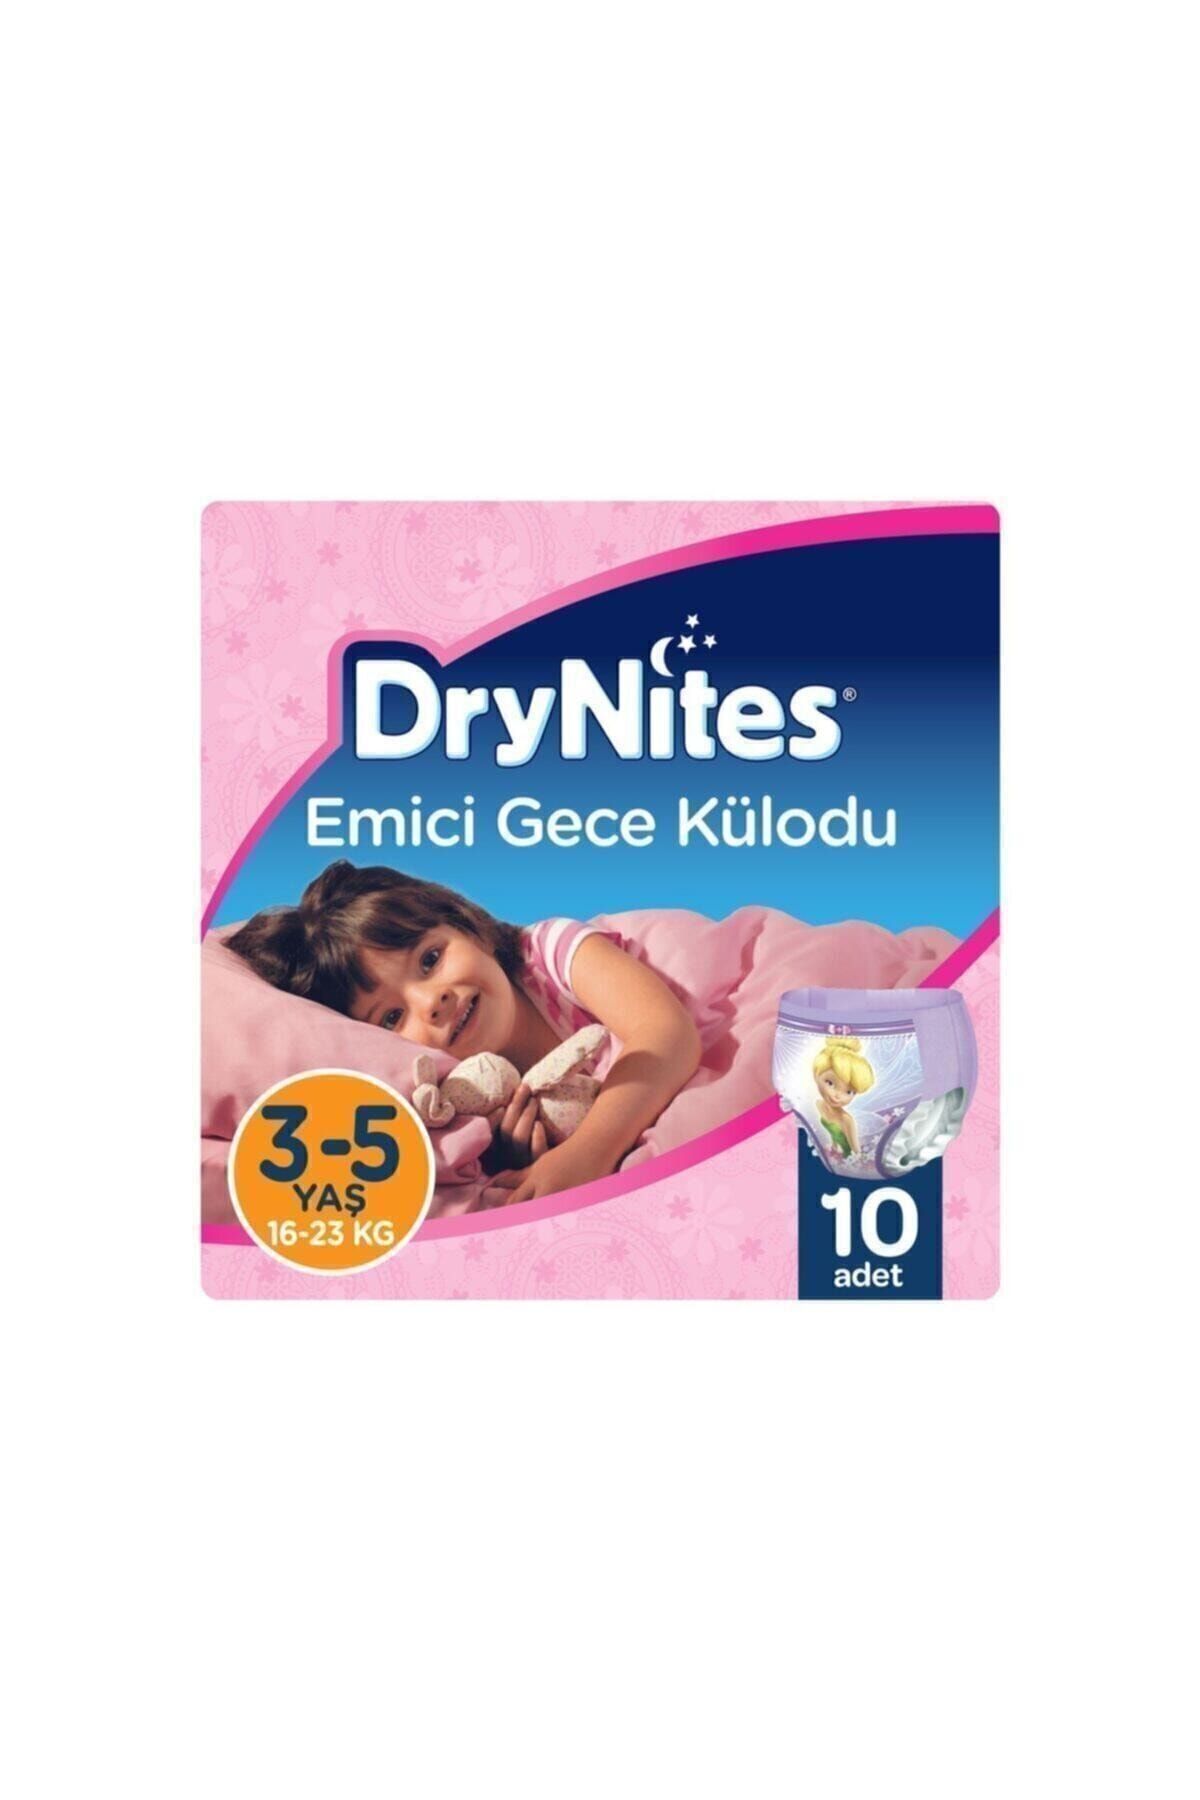 DryNites Huggies Kız Emici Gece Külodu 3 - 5 Yaş 10 Adet